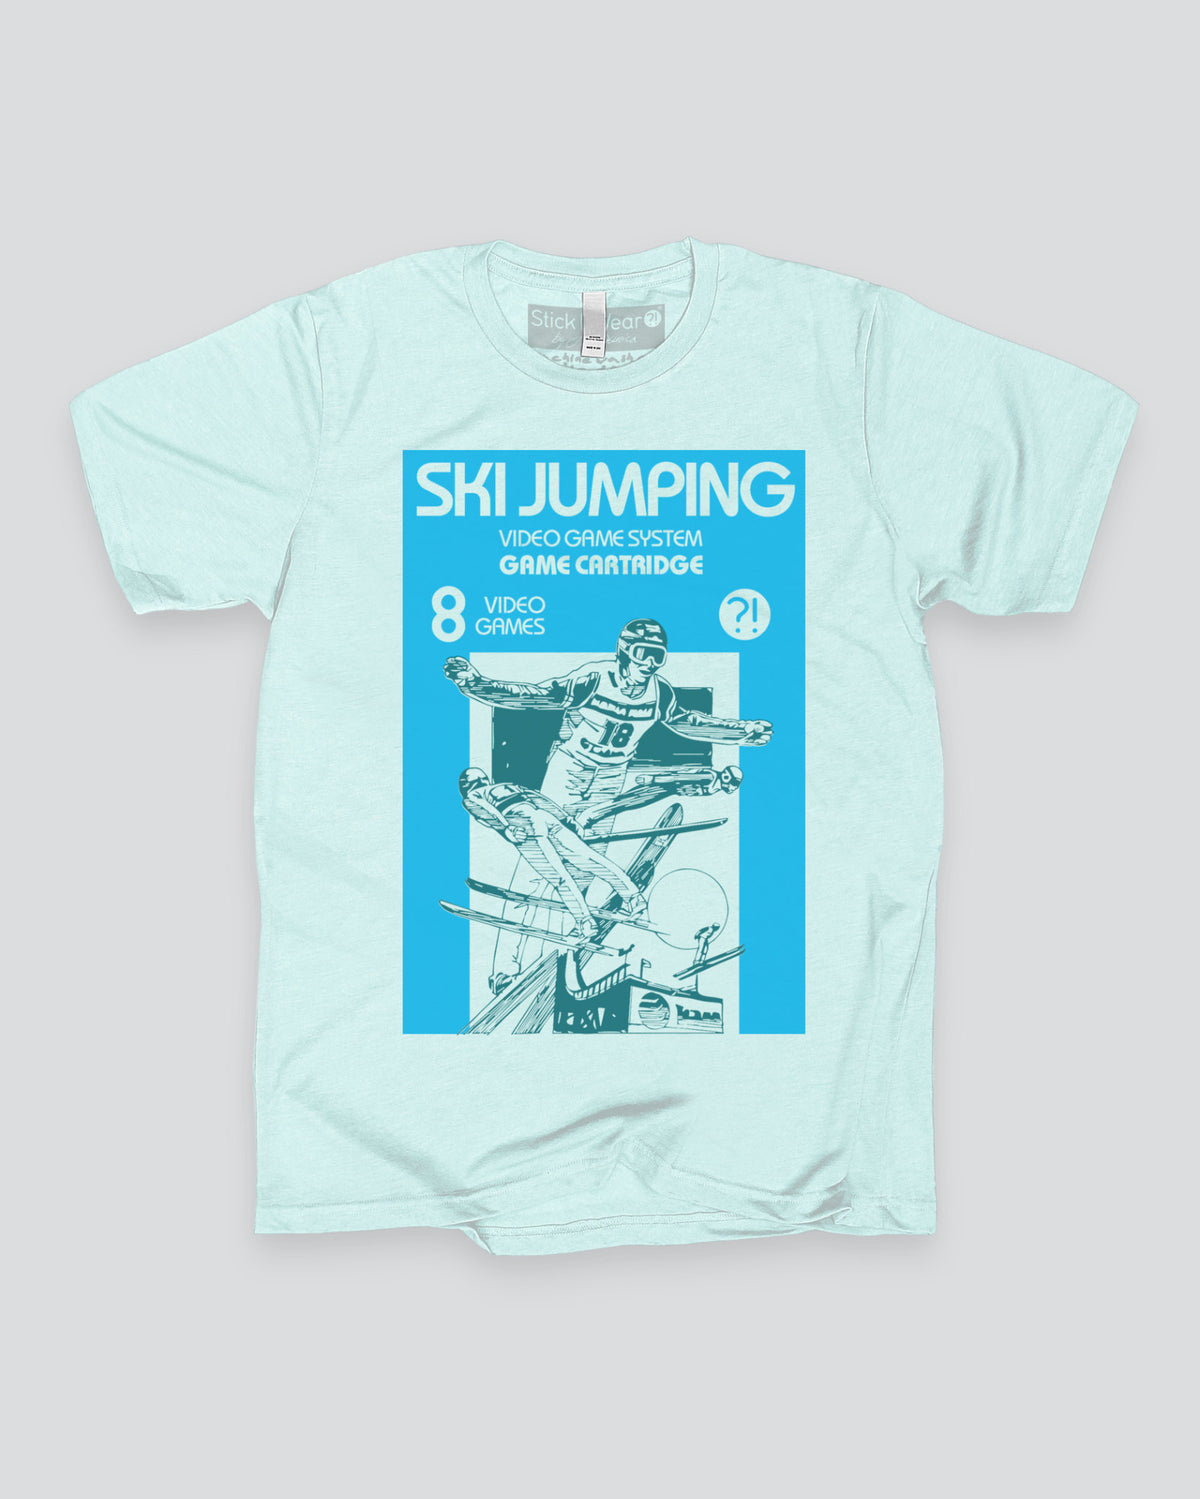 2600 SKI JUMPING VIDEO GAME T-Shirt